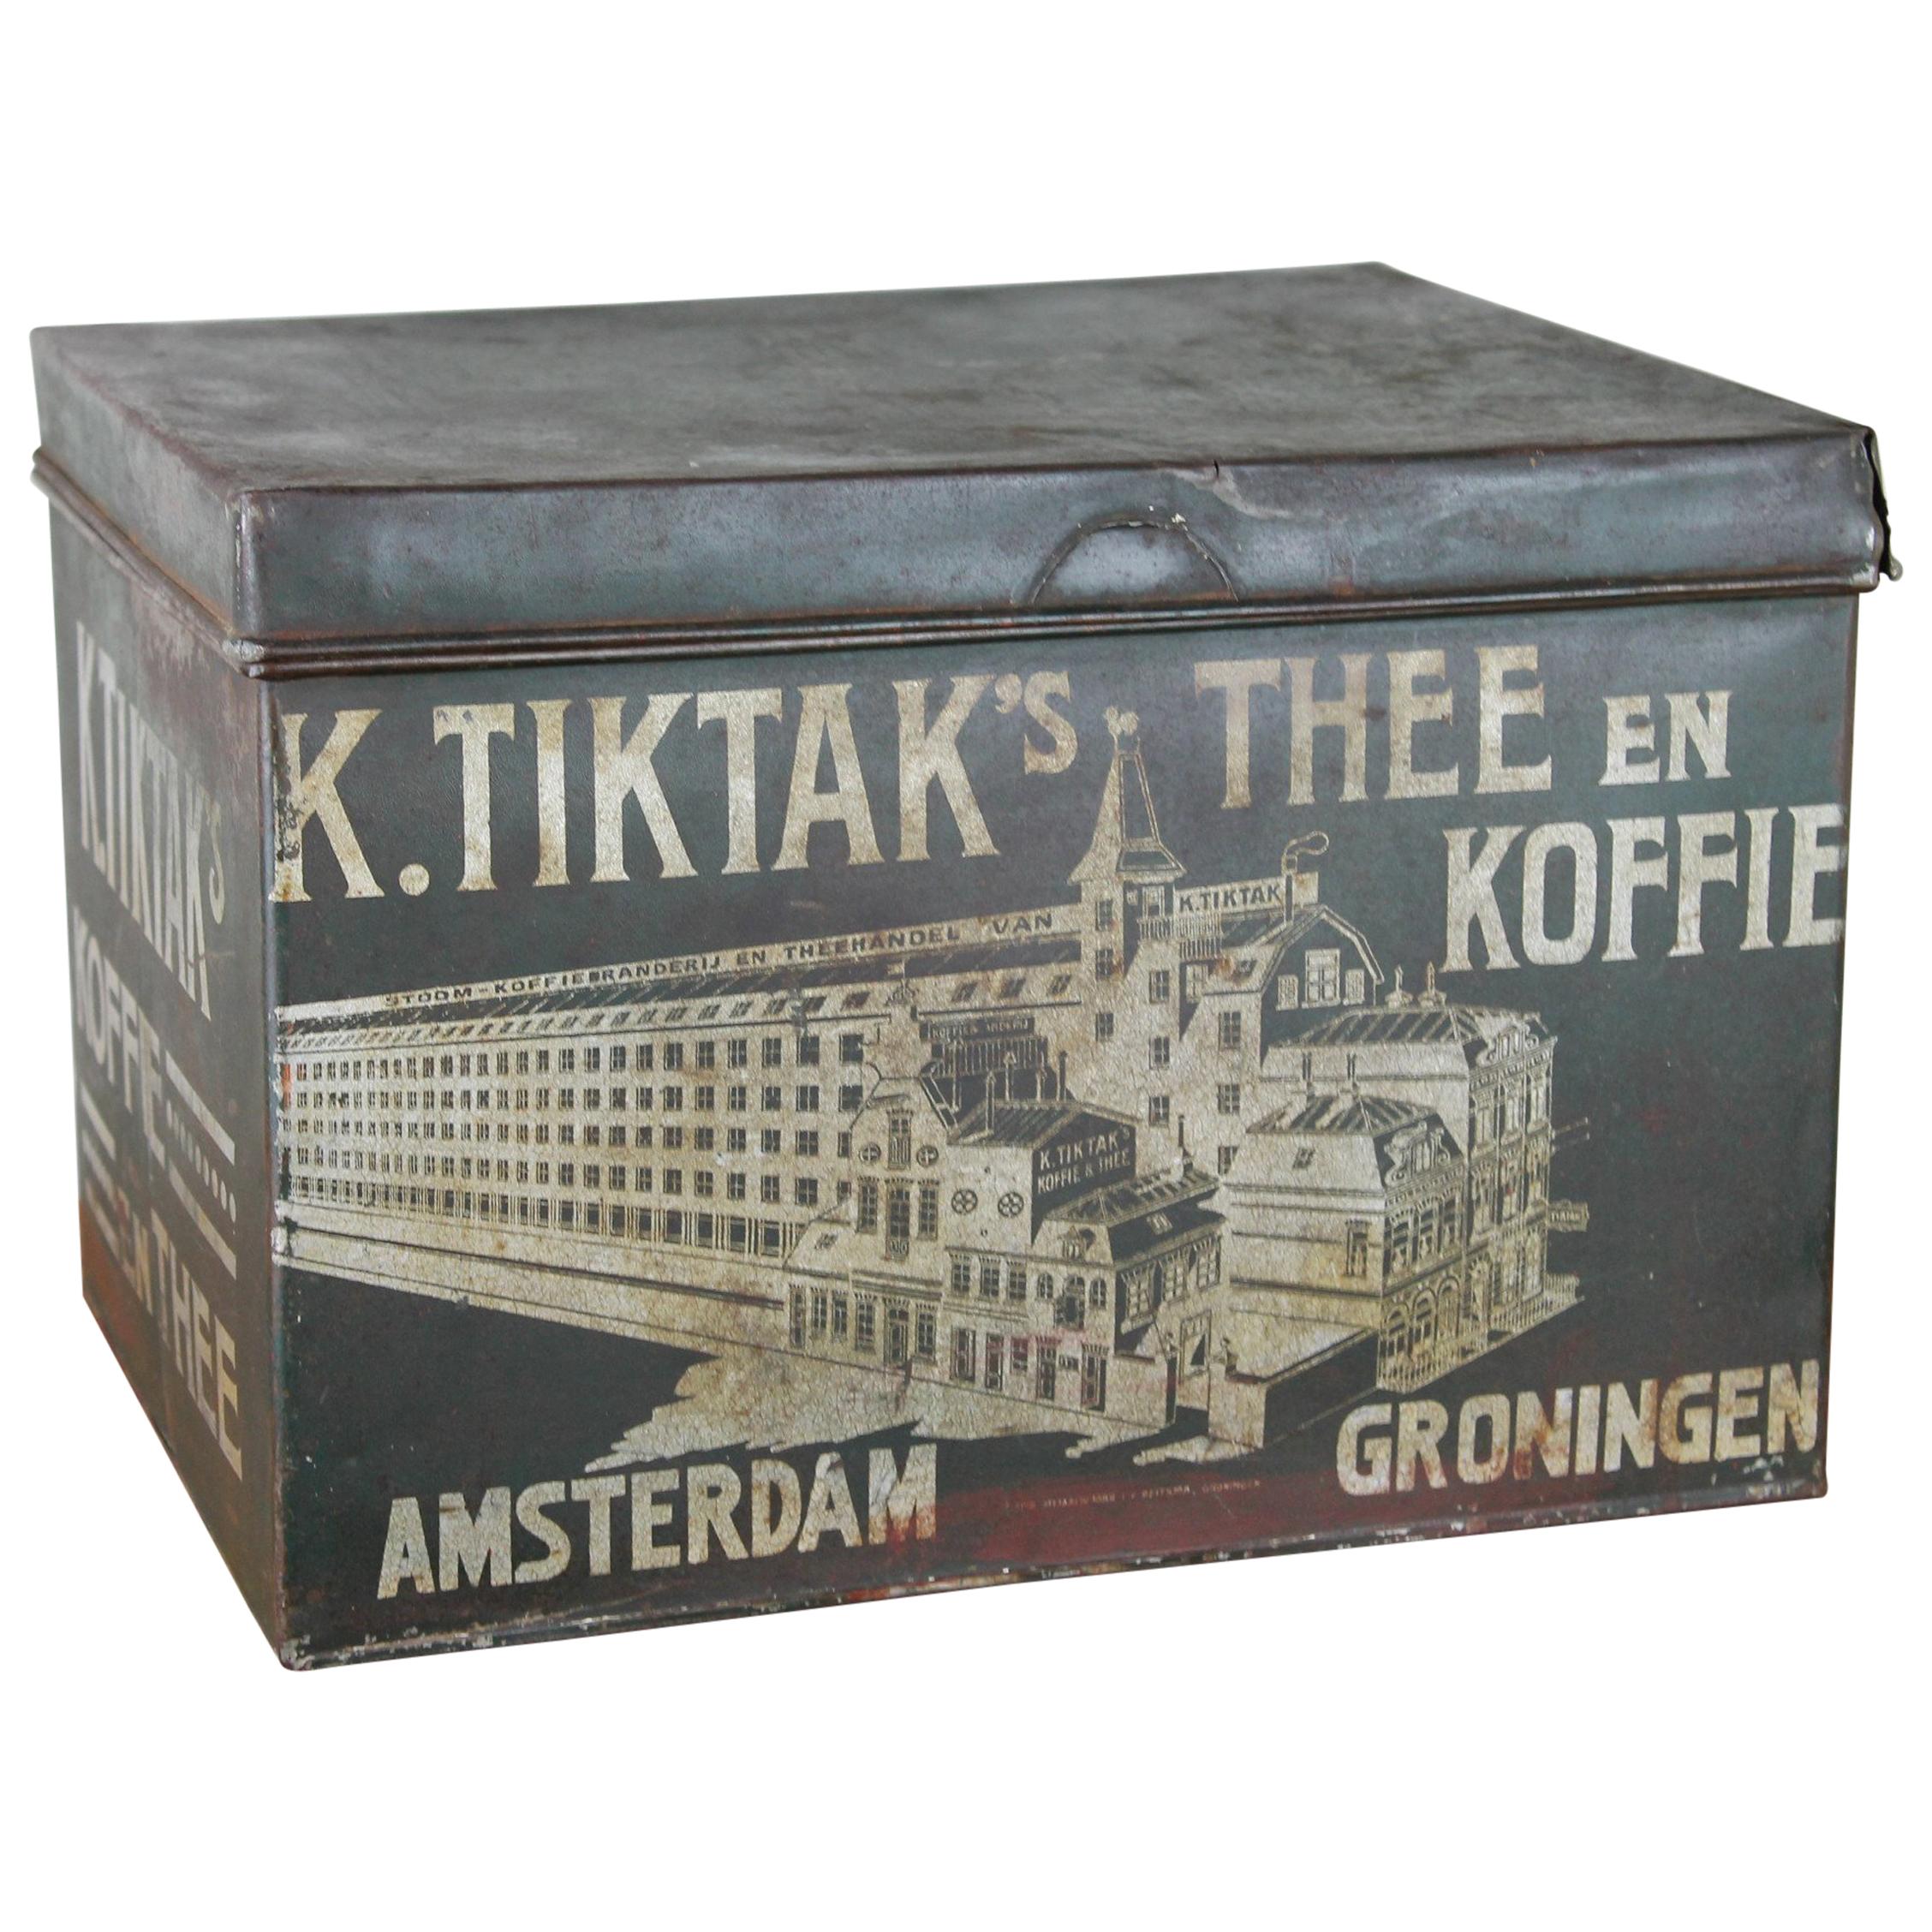 Ancienne tasse à café et à thé antique K. Tiktak's Amsterdam Groningen, début du XXe siècle